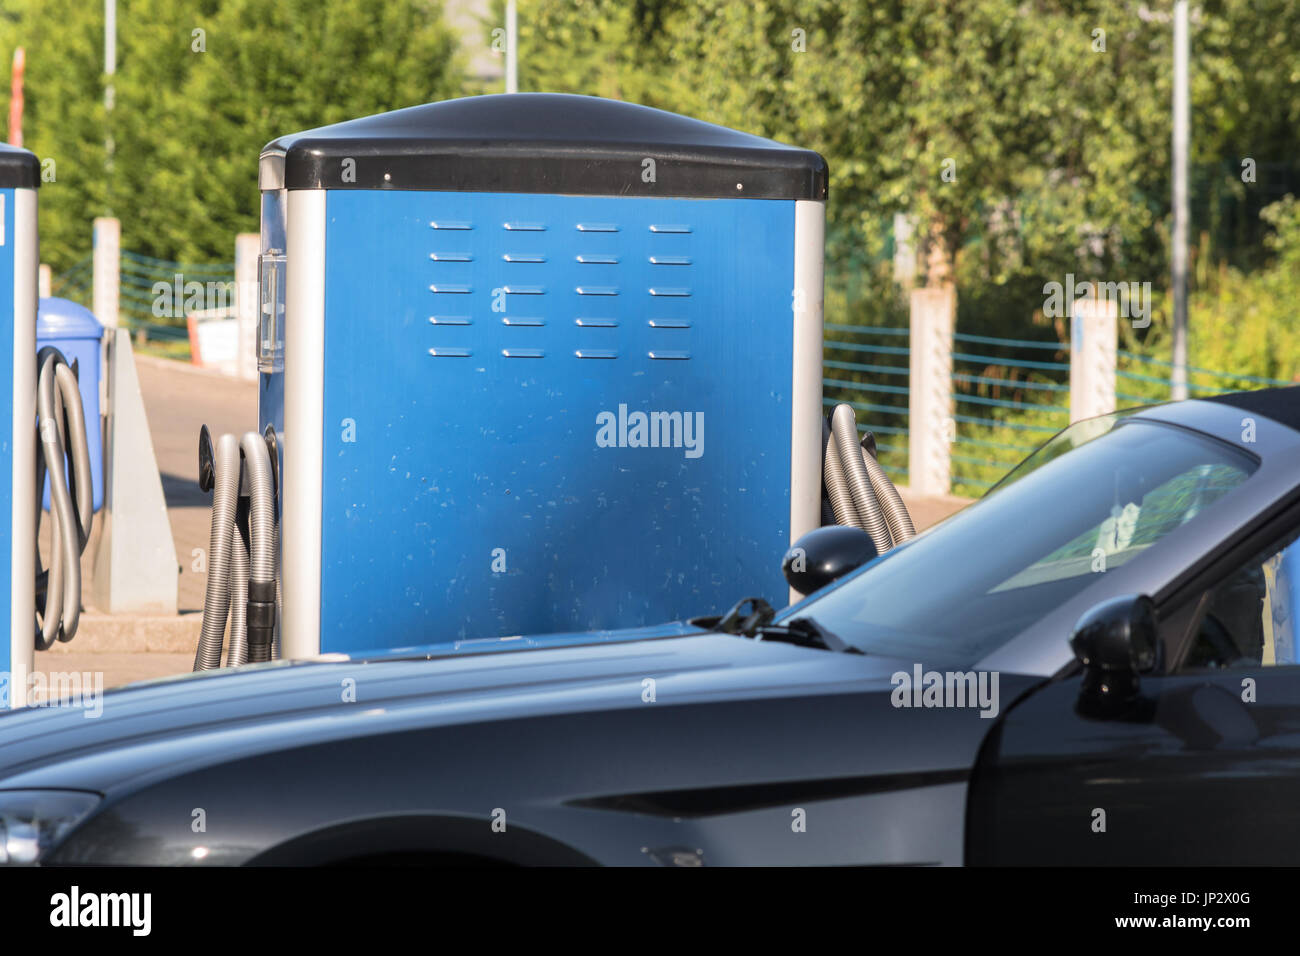 Plato aspiradora para limpiar el coche en un parking público lavadora. Foto de stock